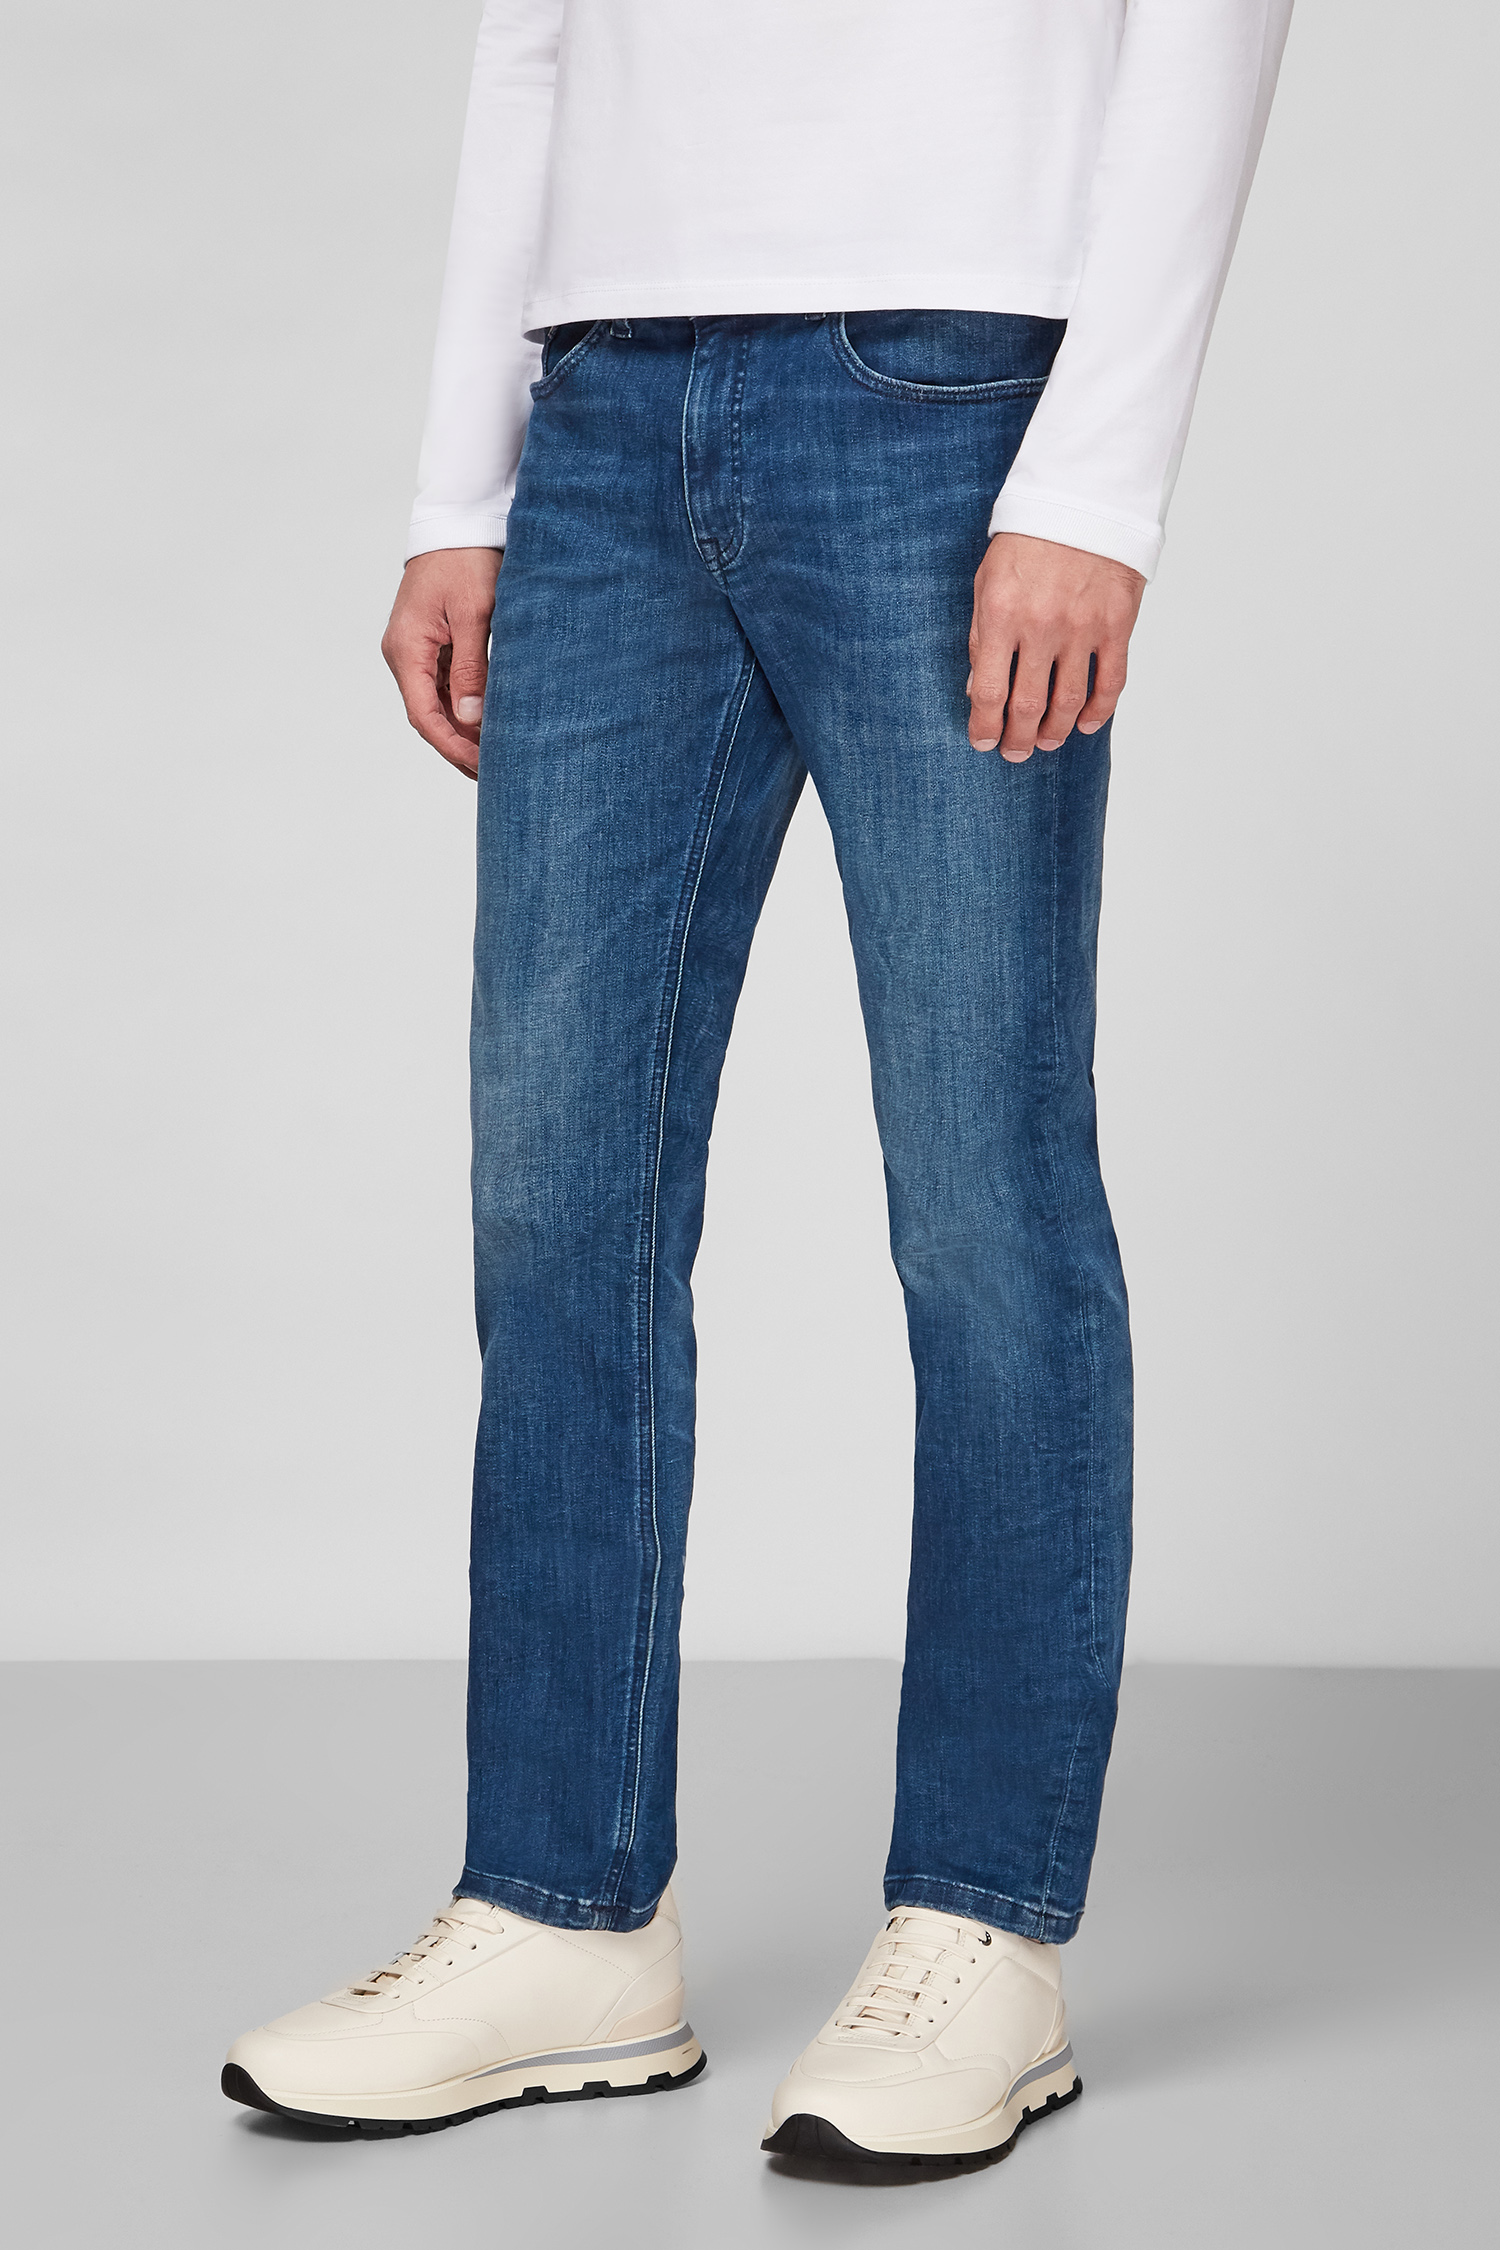 Чоловічі сині джинси Karl Lagerfeld 512830.265840;670